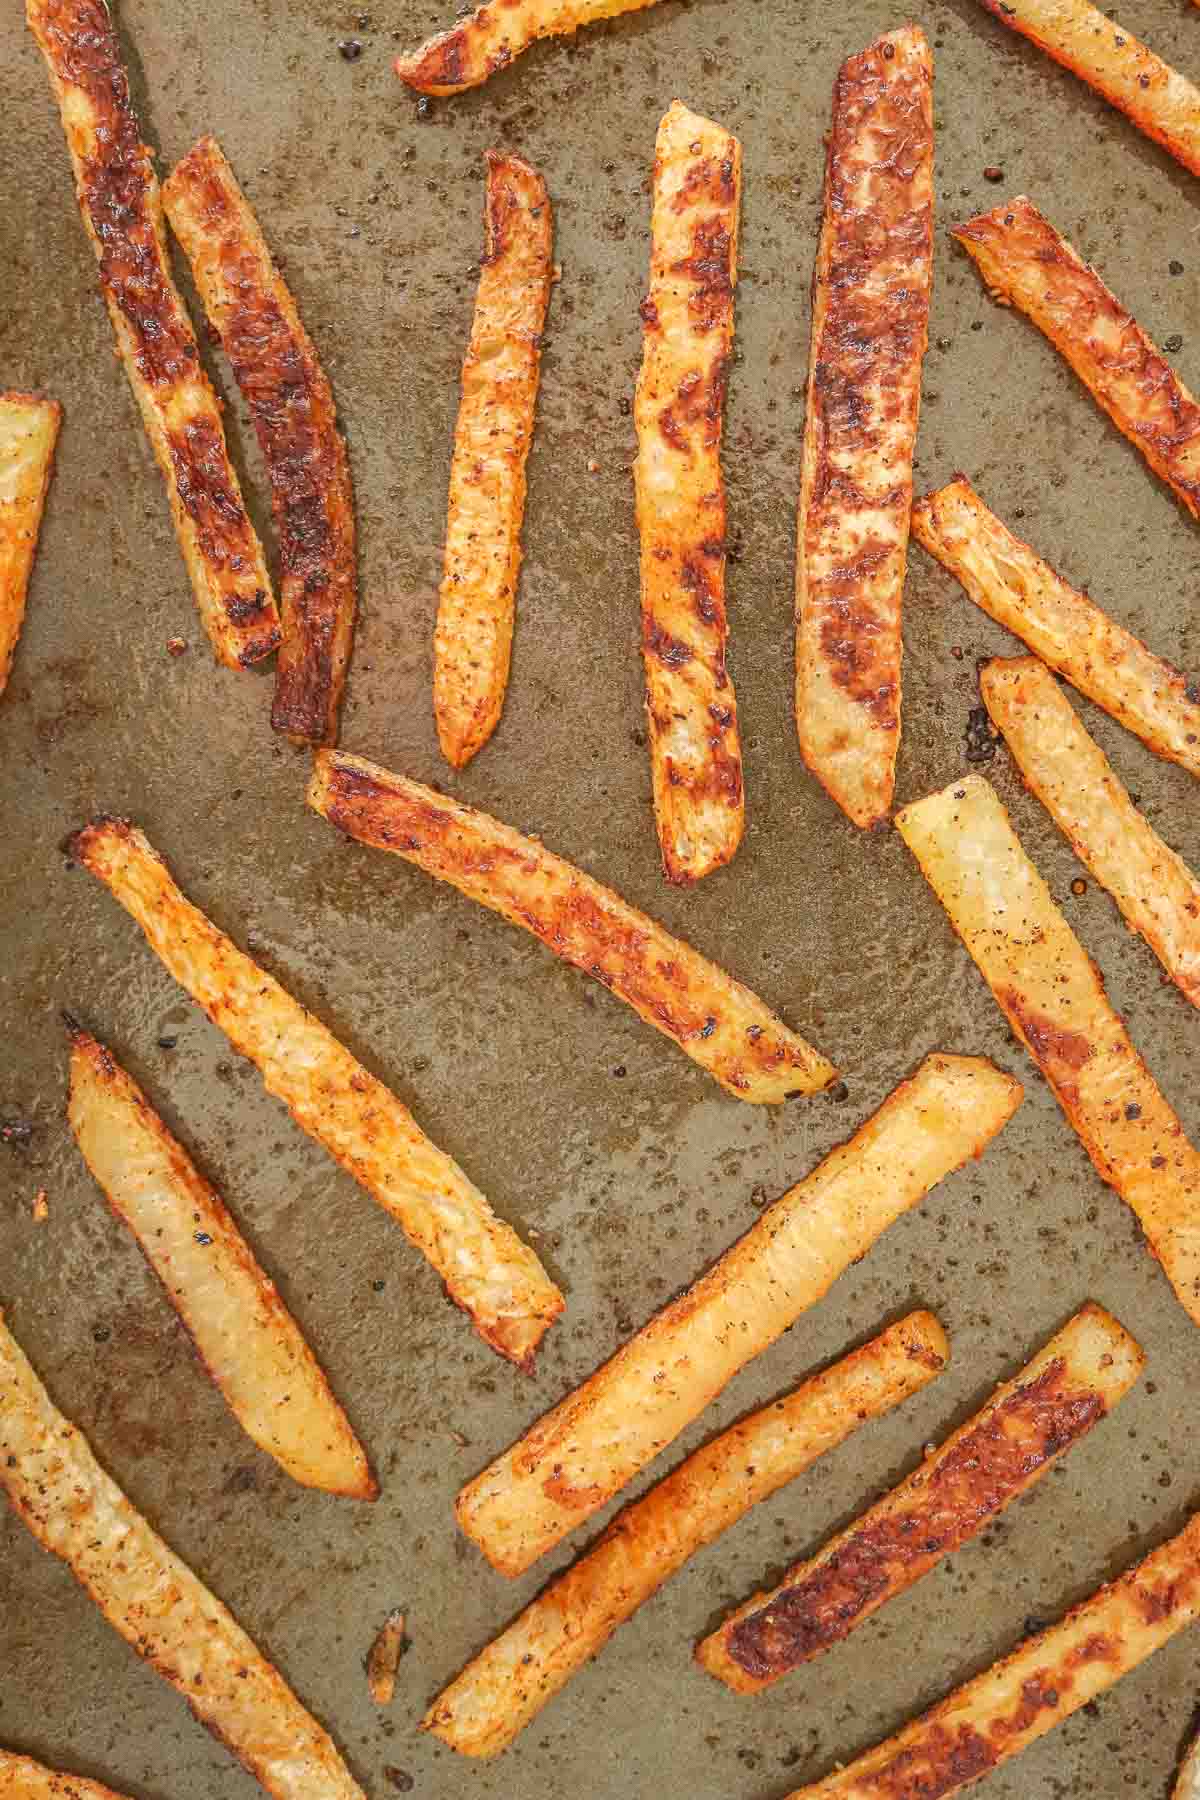 Baked kohlrabi fries on a sheet pan.